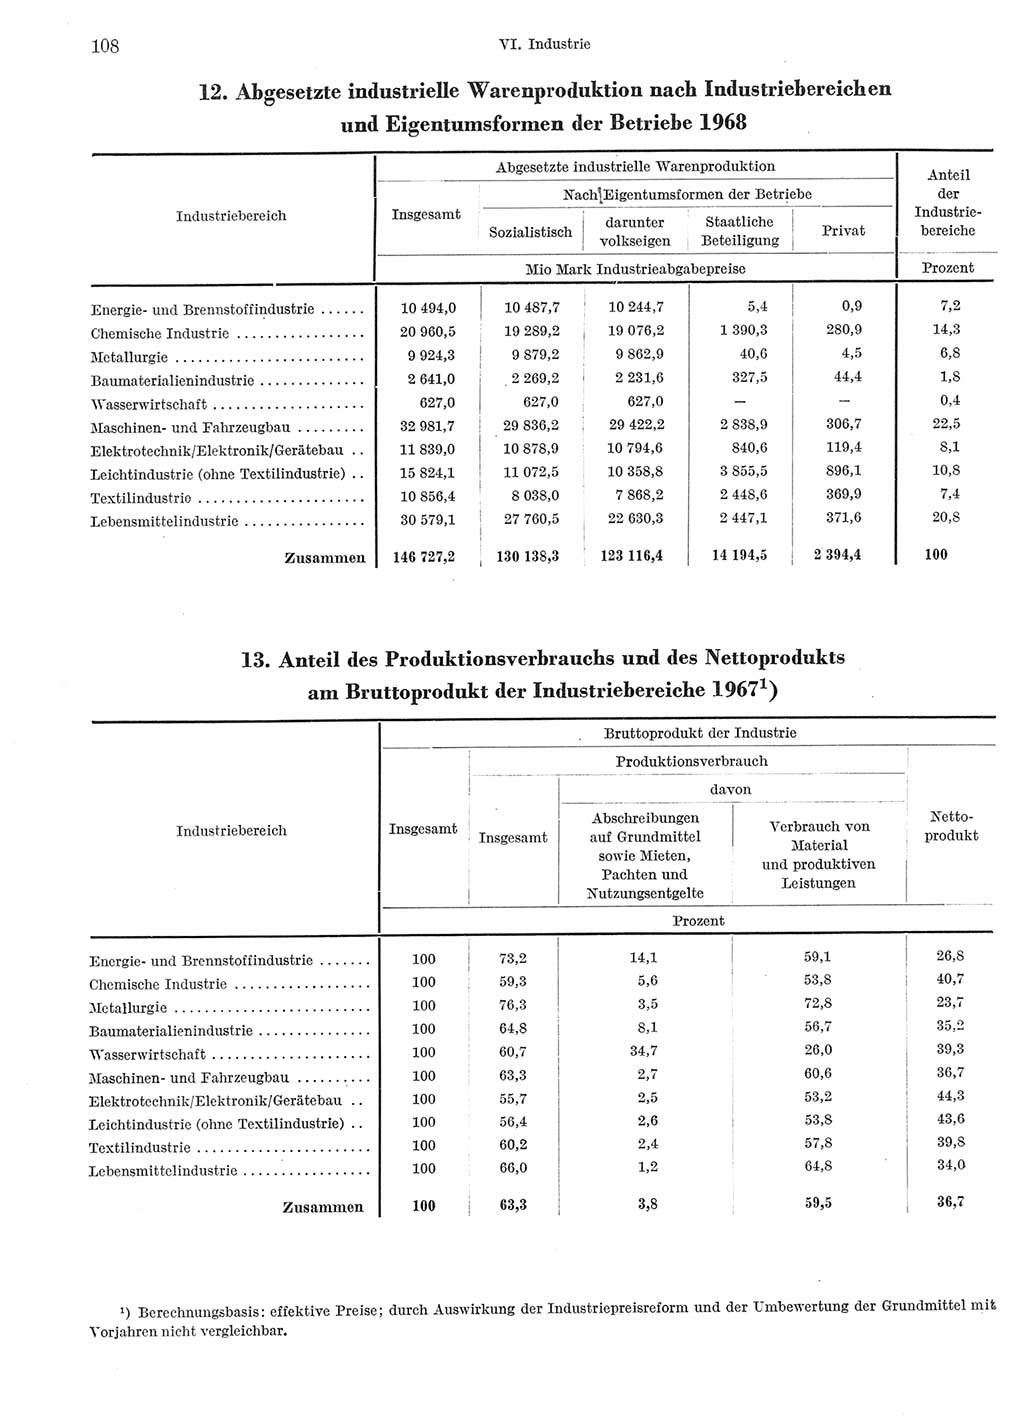 Statistisches Jahrbuch der Deutschen Demokratischen Republik (DDR) 1969, Seite 108 (Stat. Jb. DDR 1969, S. 108)